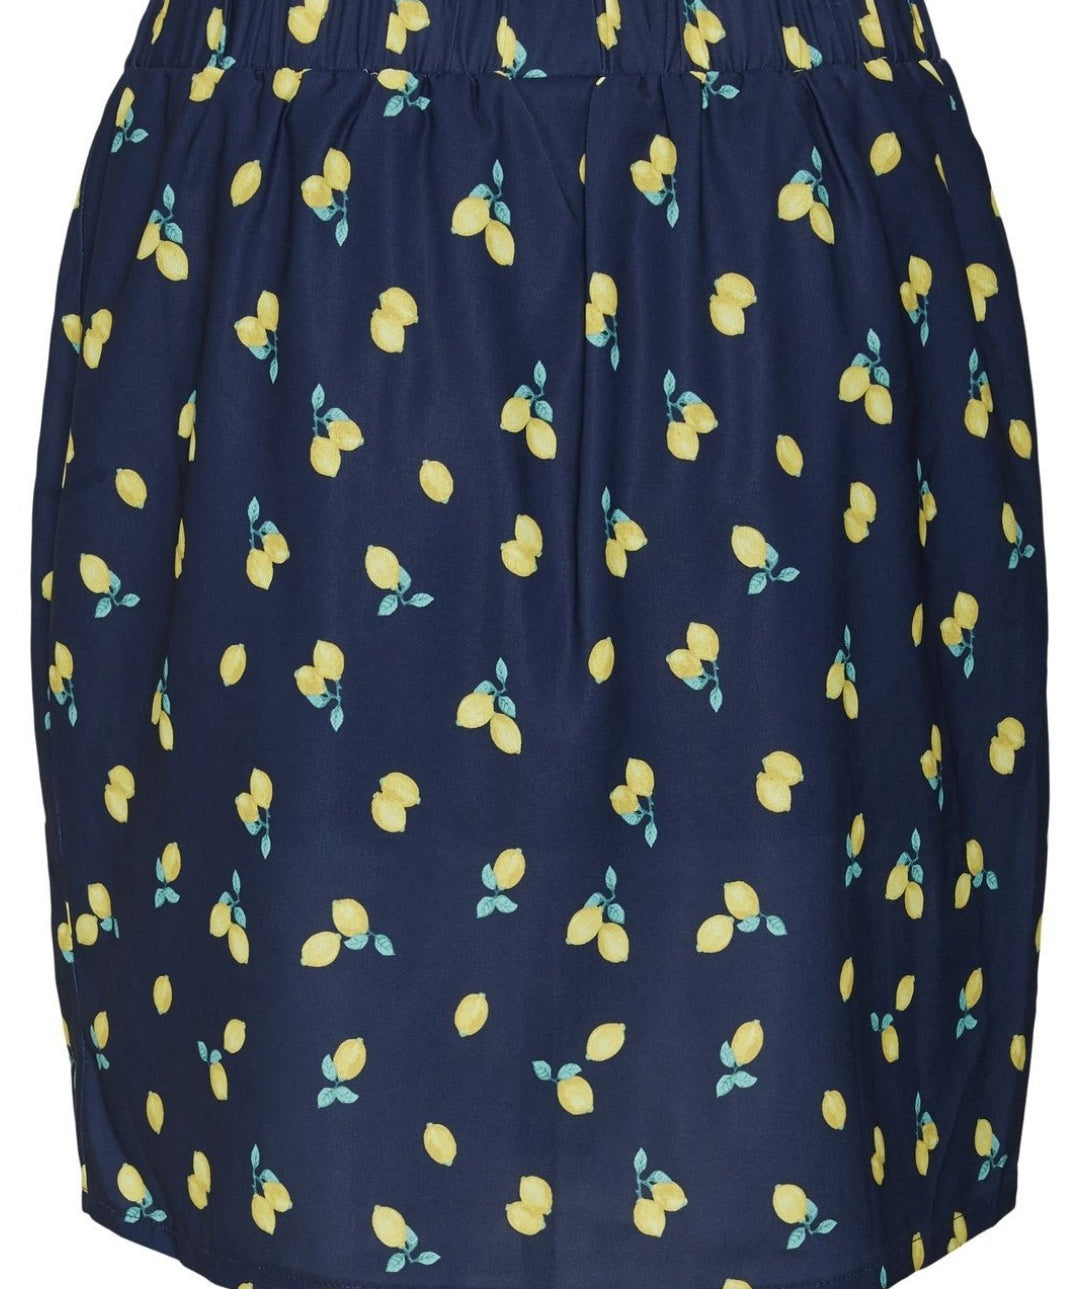 Noisy May - Joe HW Short Skirt (Navy/Lemons)